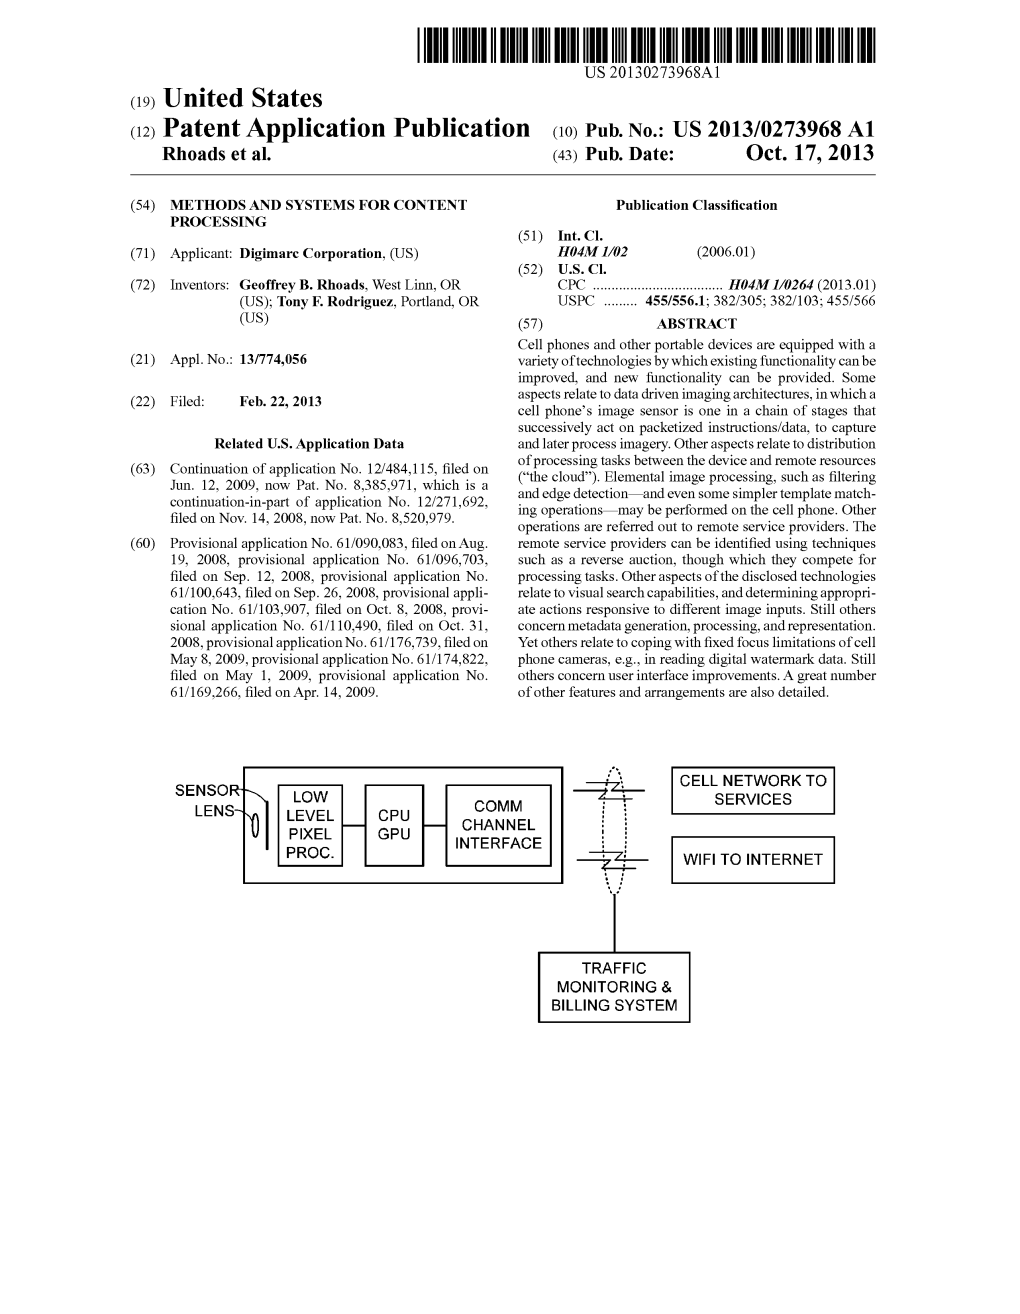 (12) Patent Application Publication (10) Pub. No.: US 2013/0273968 A1 Rhoads Et Al